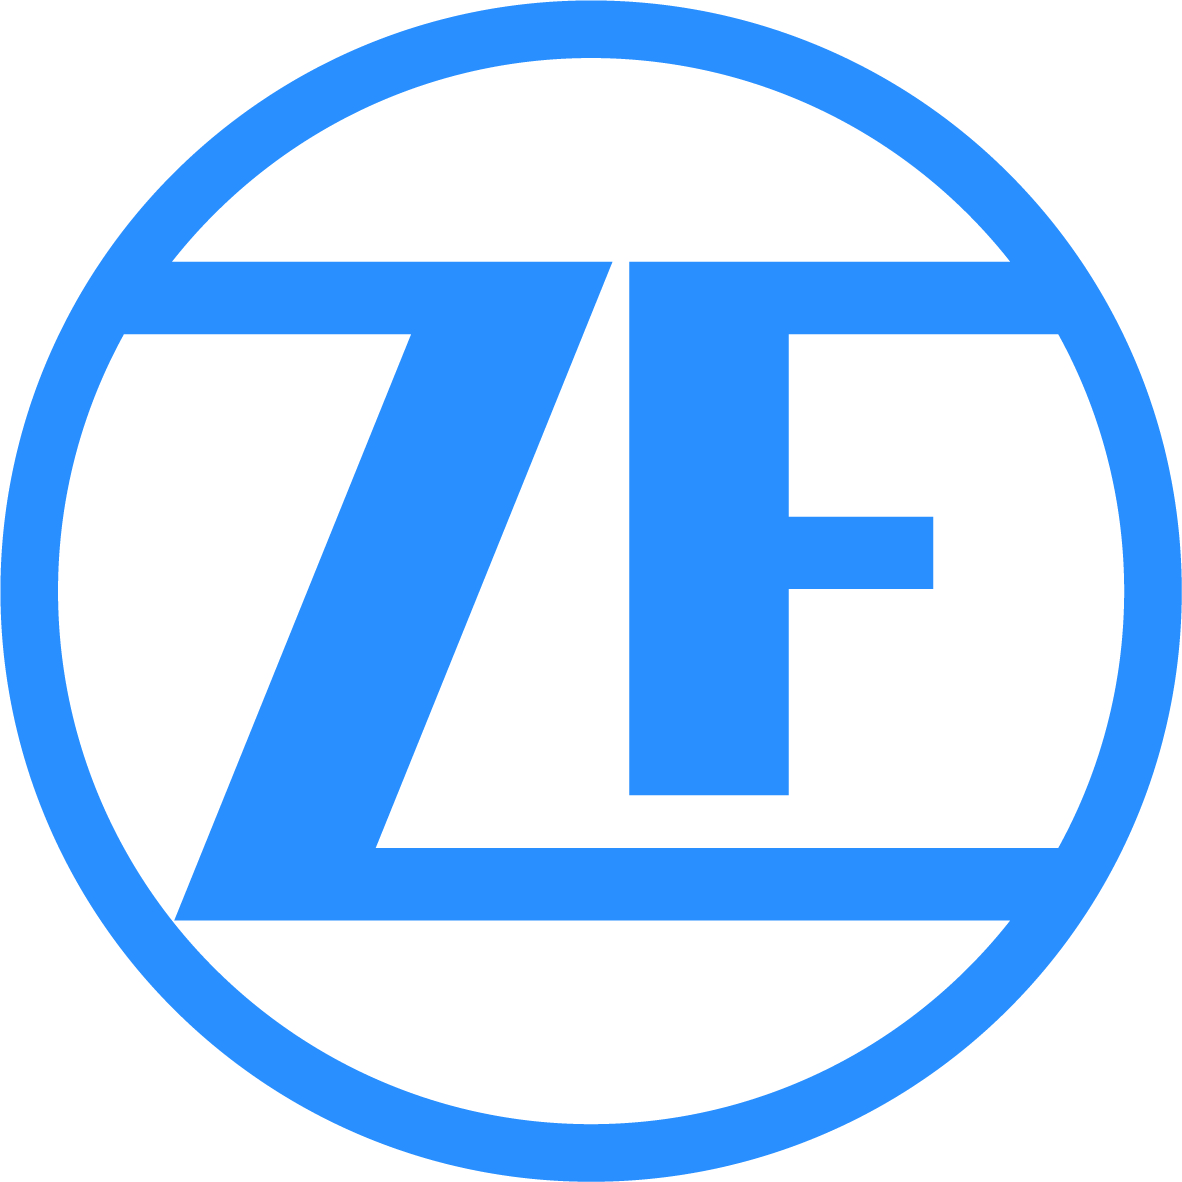 ZF 0.1a microswitch